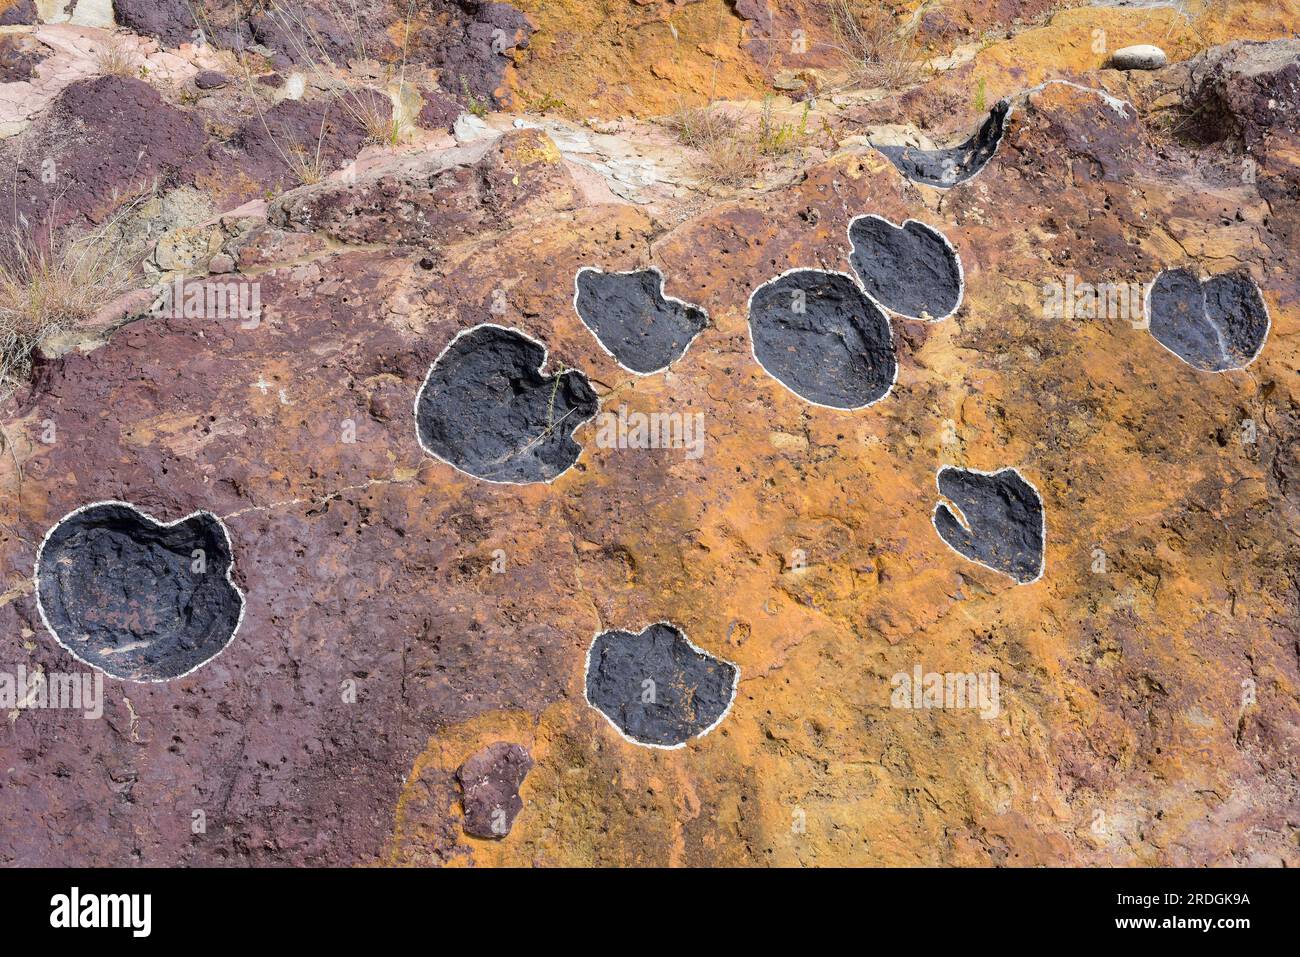 Ichnofossili o tracce di fossili di dinosauri sauropodi impronte. Questa foto è stata scattata ad Aren, Huesca, Aragona, Spagna. Foto Stock